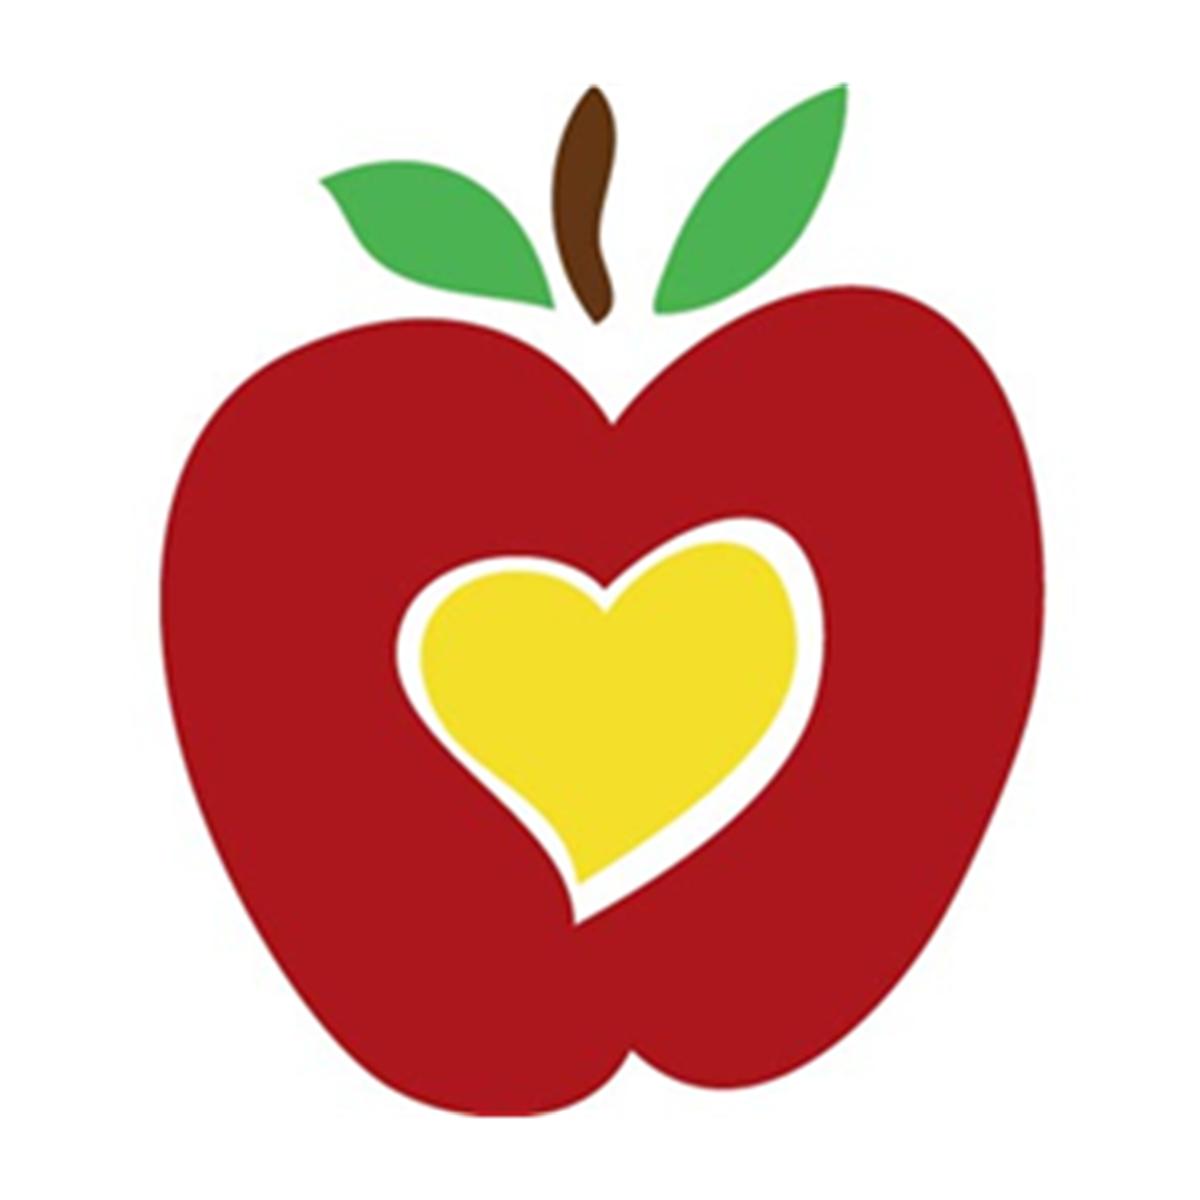 clipart teacher apple - photo #21